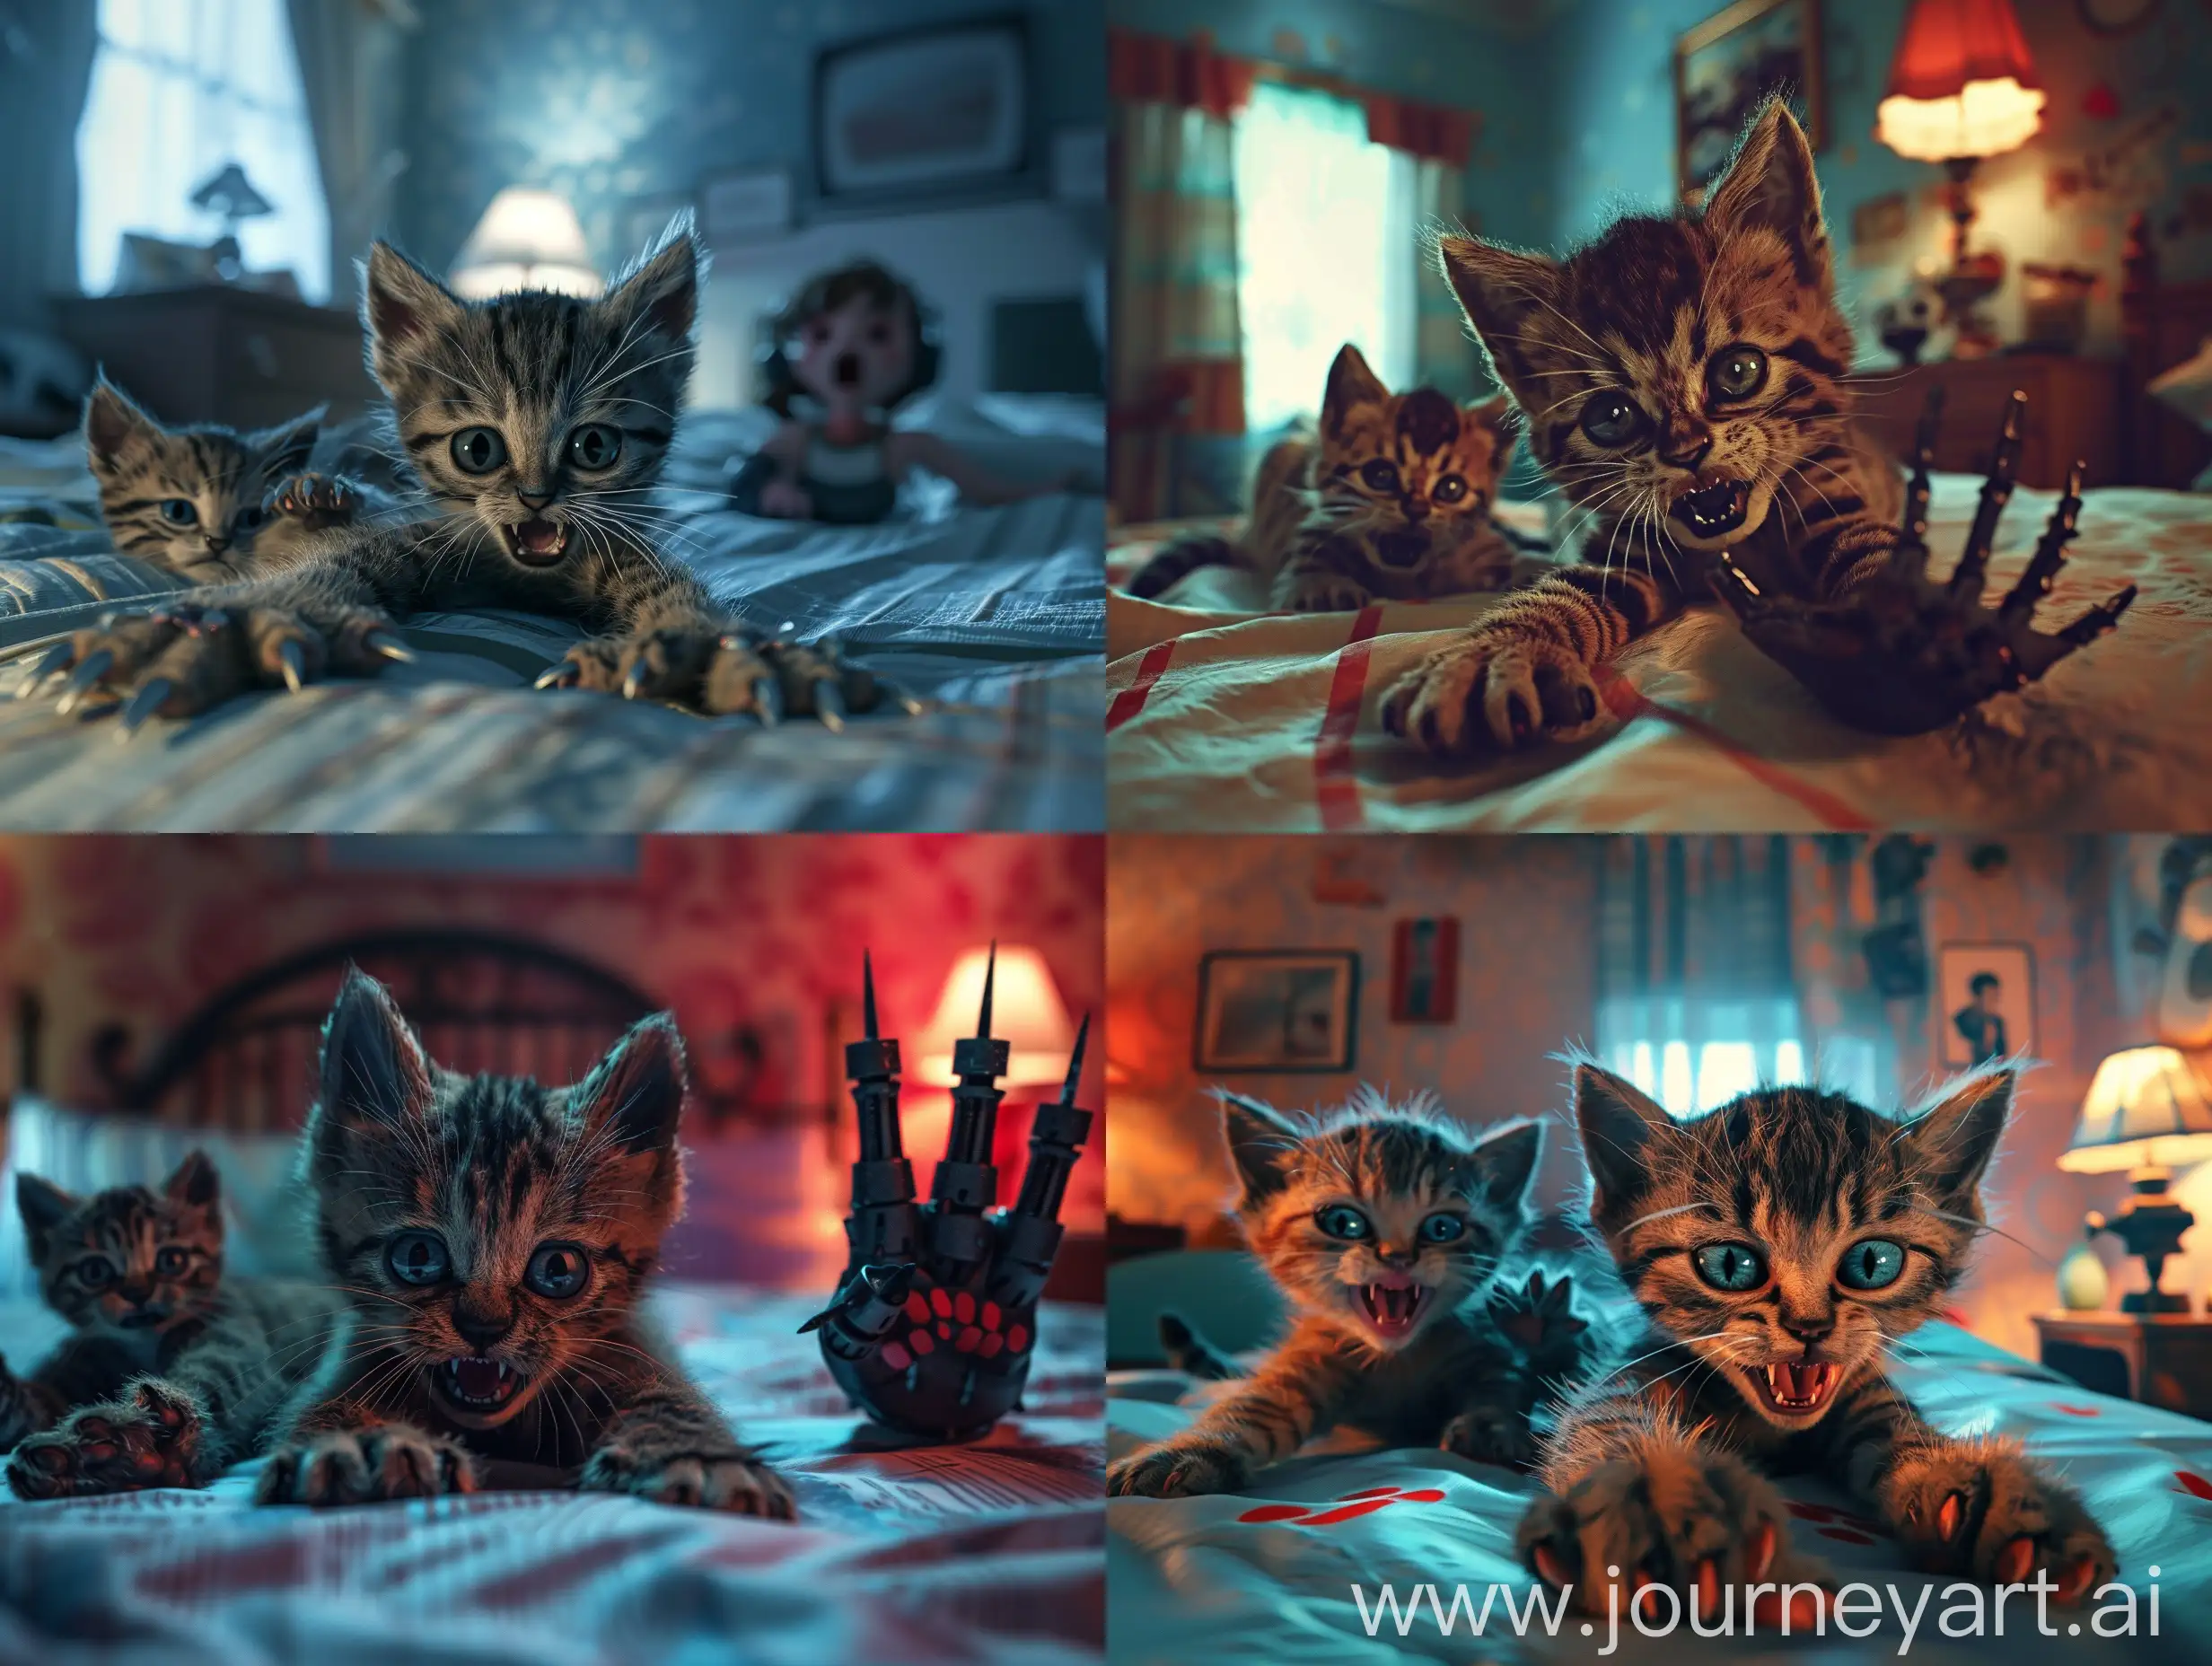 Cute-Micro-Kitten-as-Freddy-Krueger-in-Steampunk-Style-Nightmare-on-Elm-Street-Scene